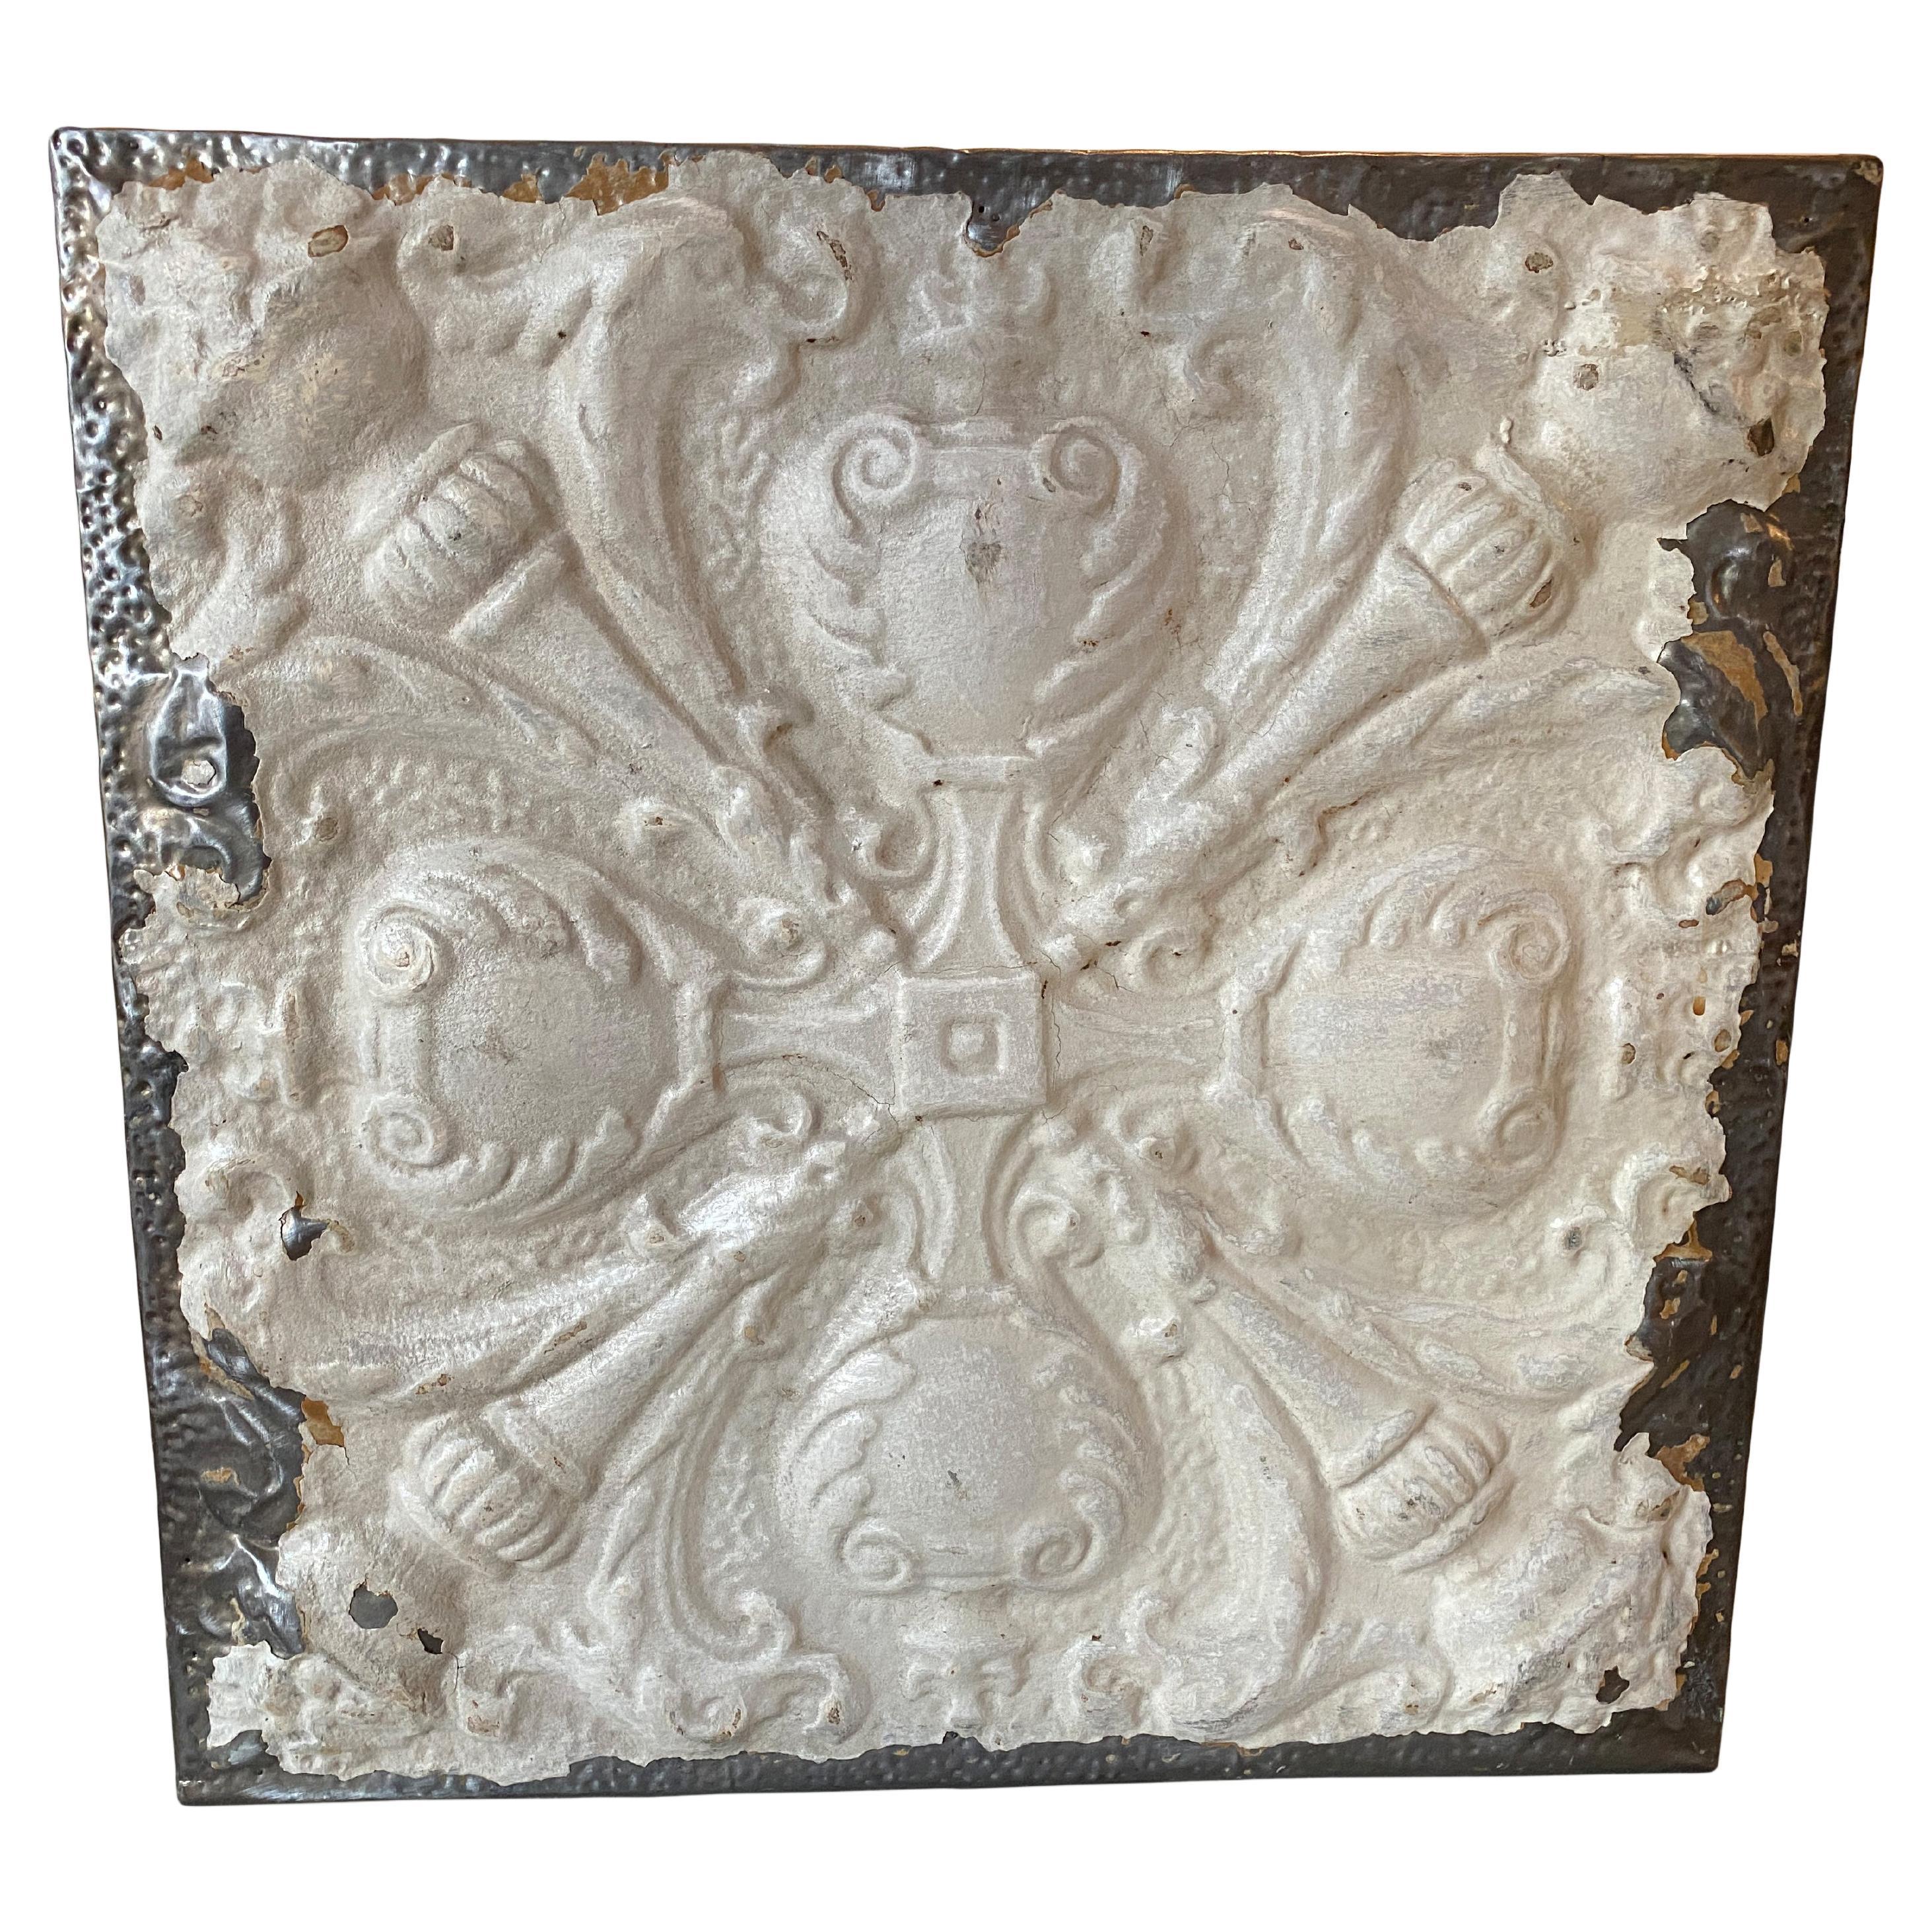 Andrianna Shamaris Antique Tin Ceiling Remnant